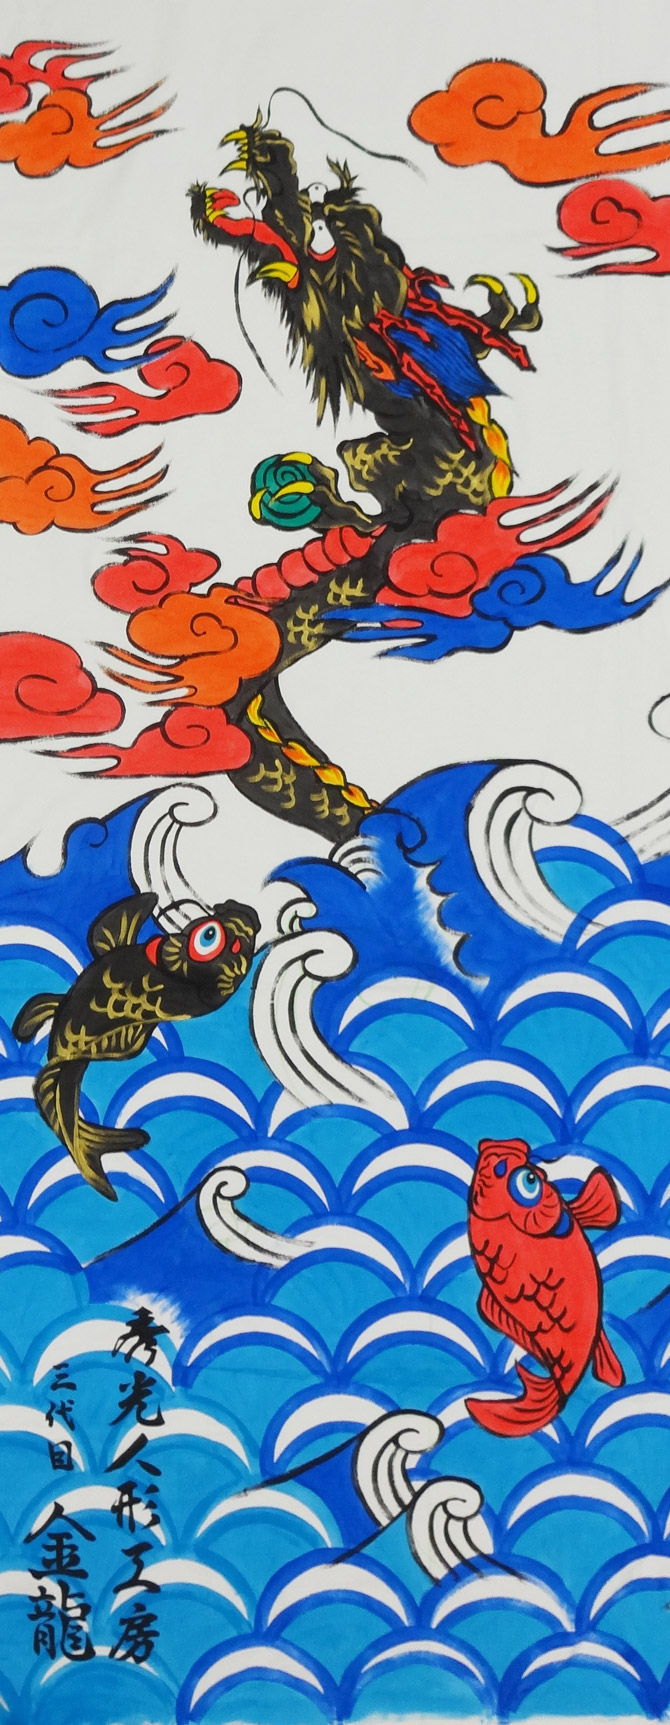 江戸唯一の「江戸手描き鯉のぼり」を製作、販売しています。 | 職人 